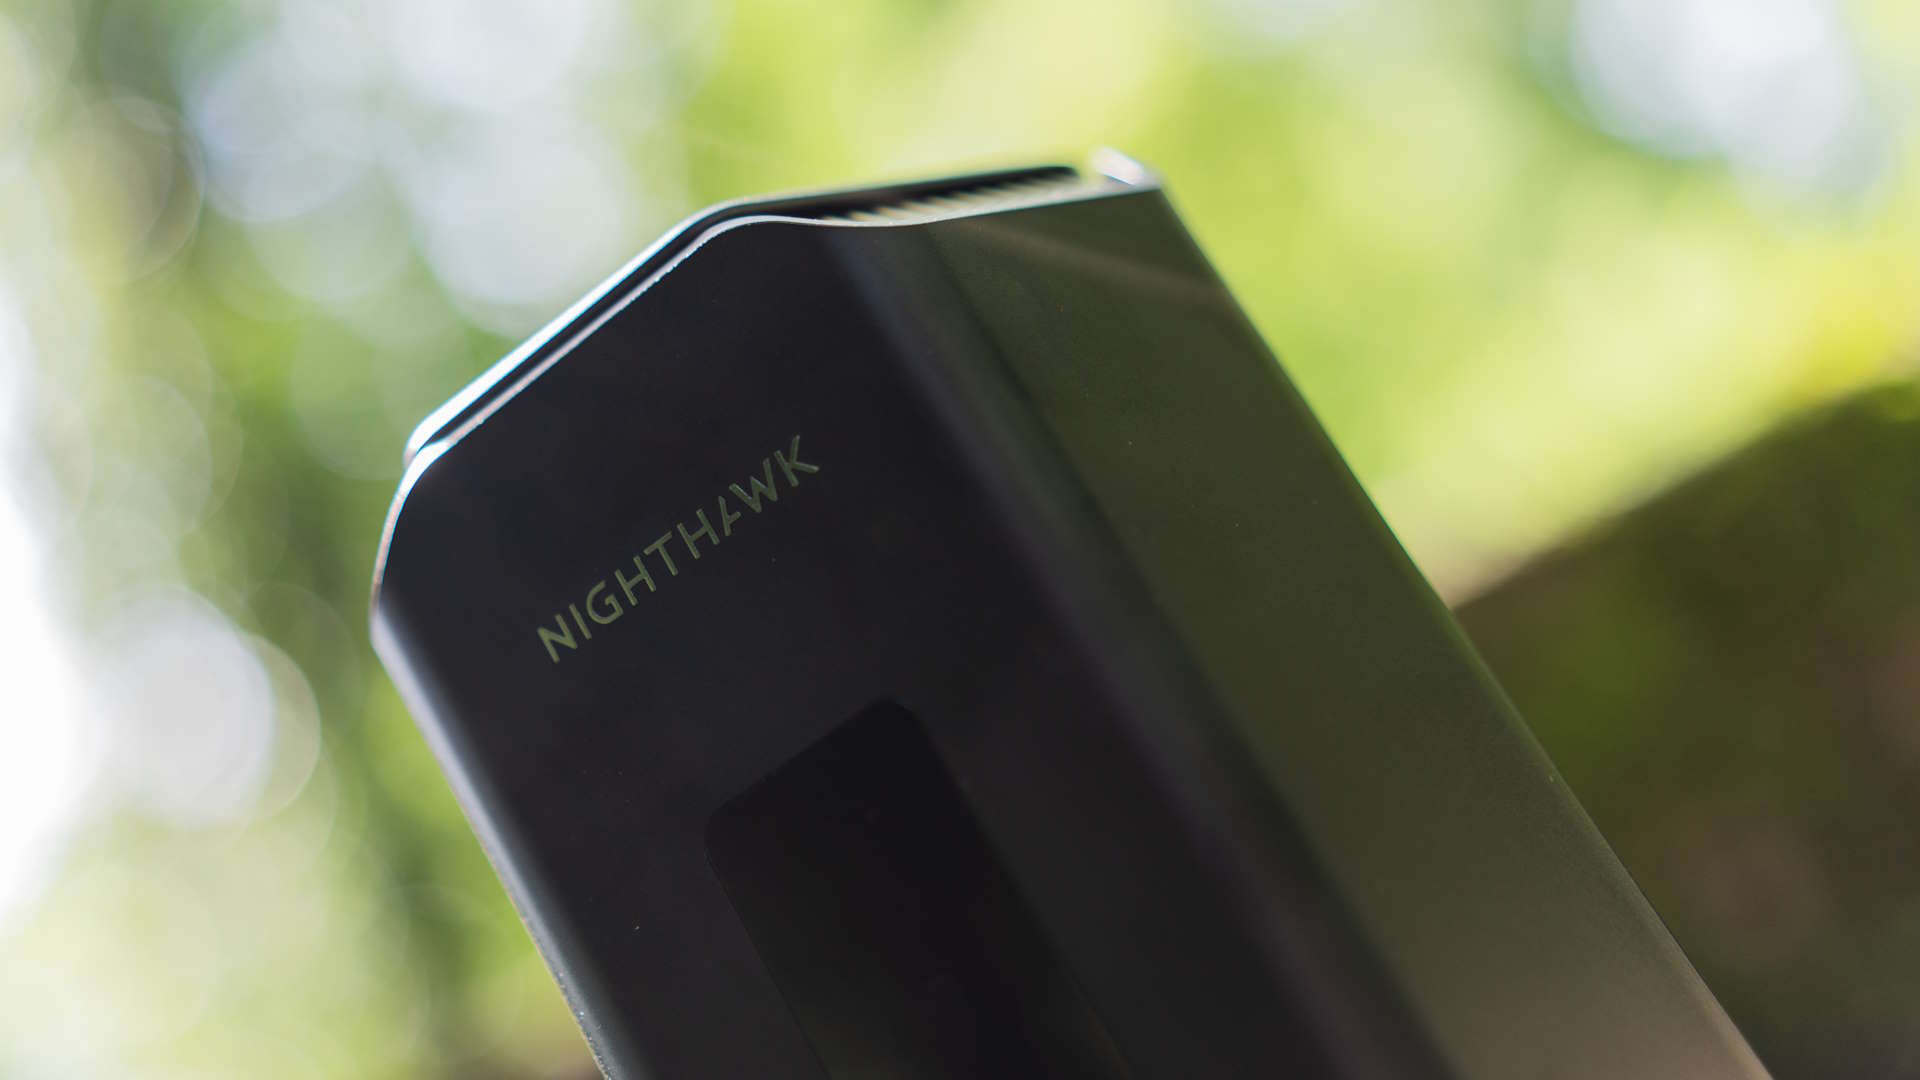 Netgear Nighthawk RS700S router